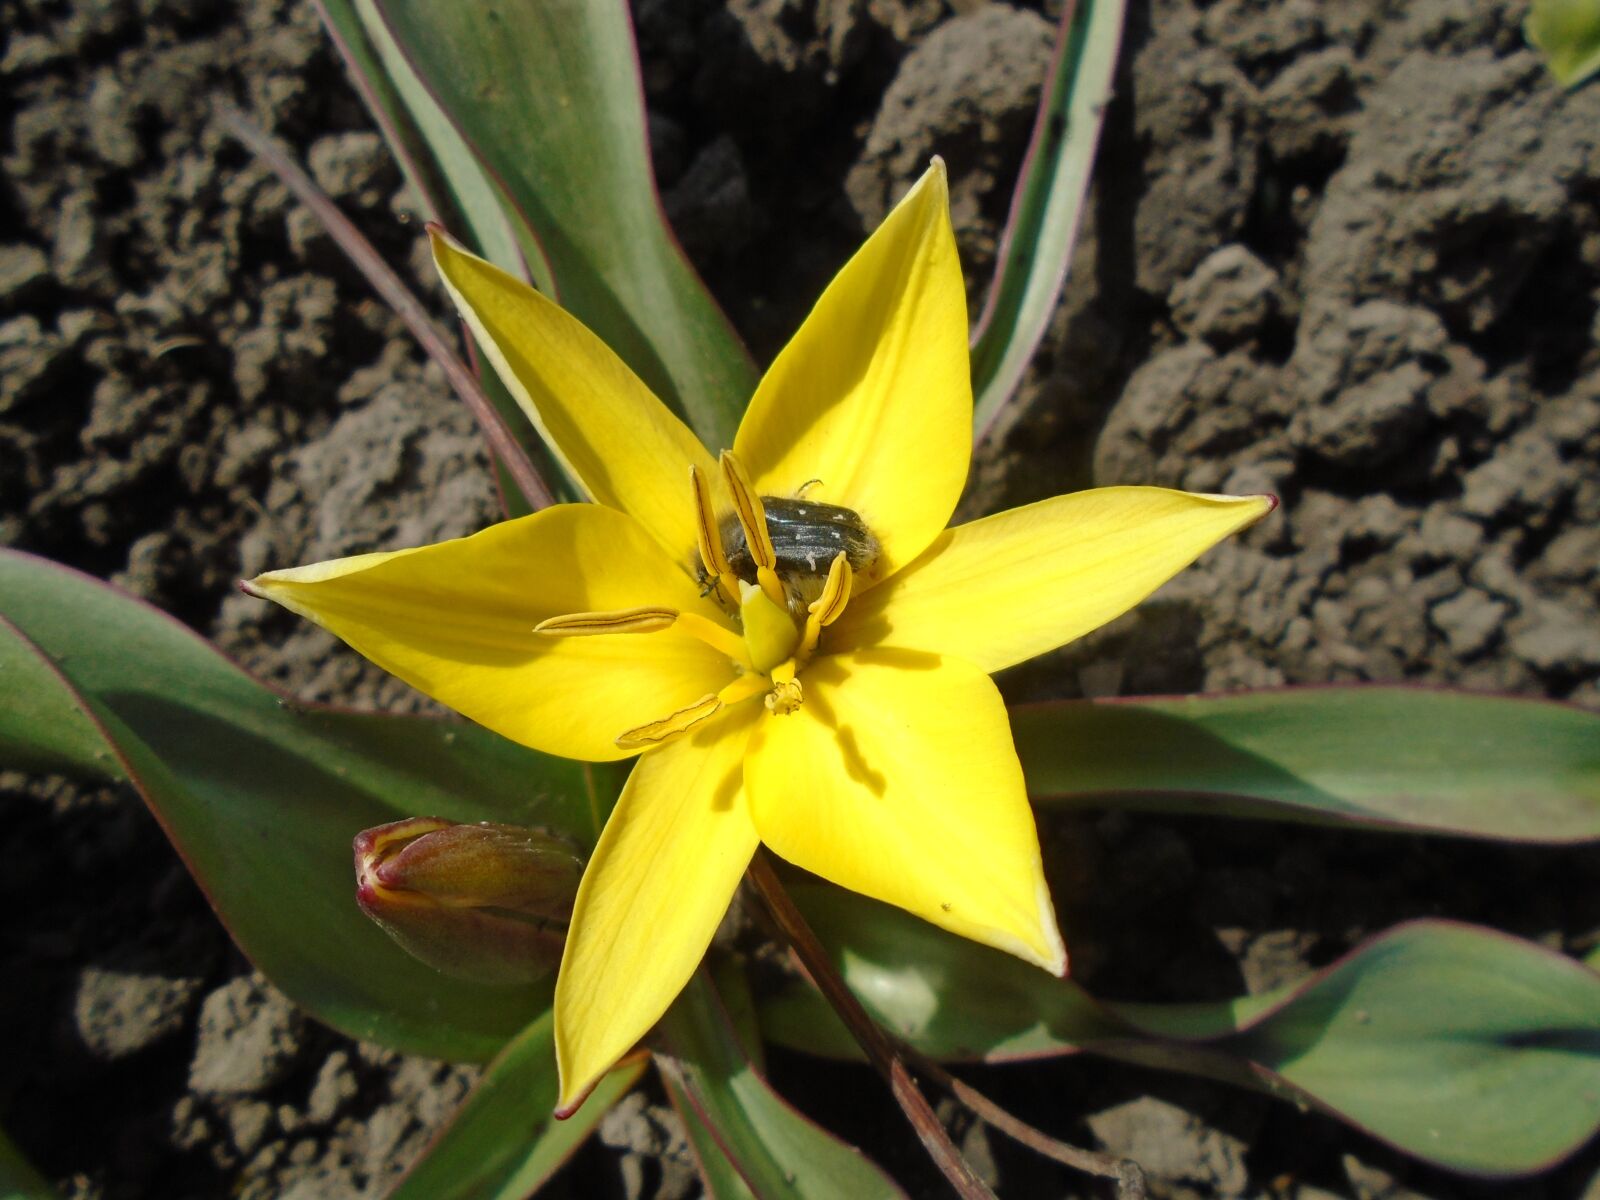 Sony Cyber-shot DSC-W800 sample photo. Beetle, bloom, flower photography